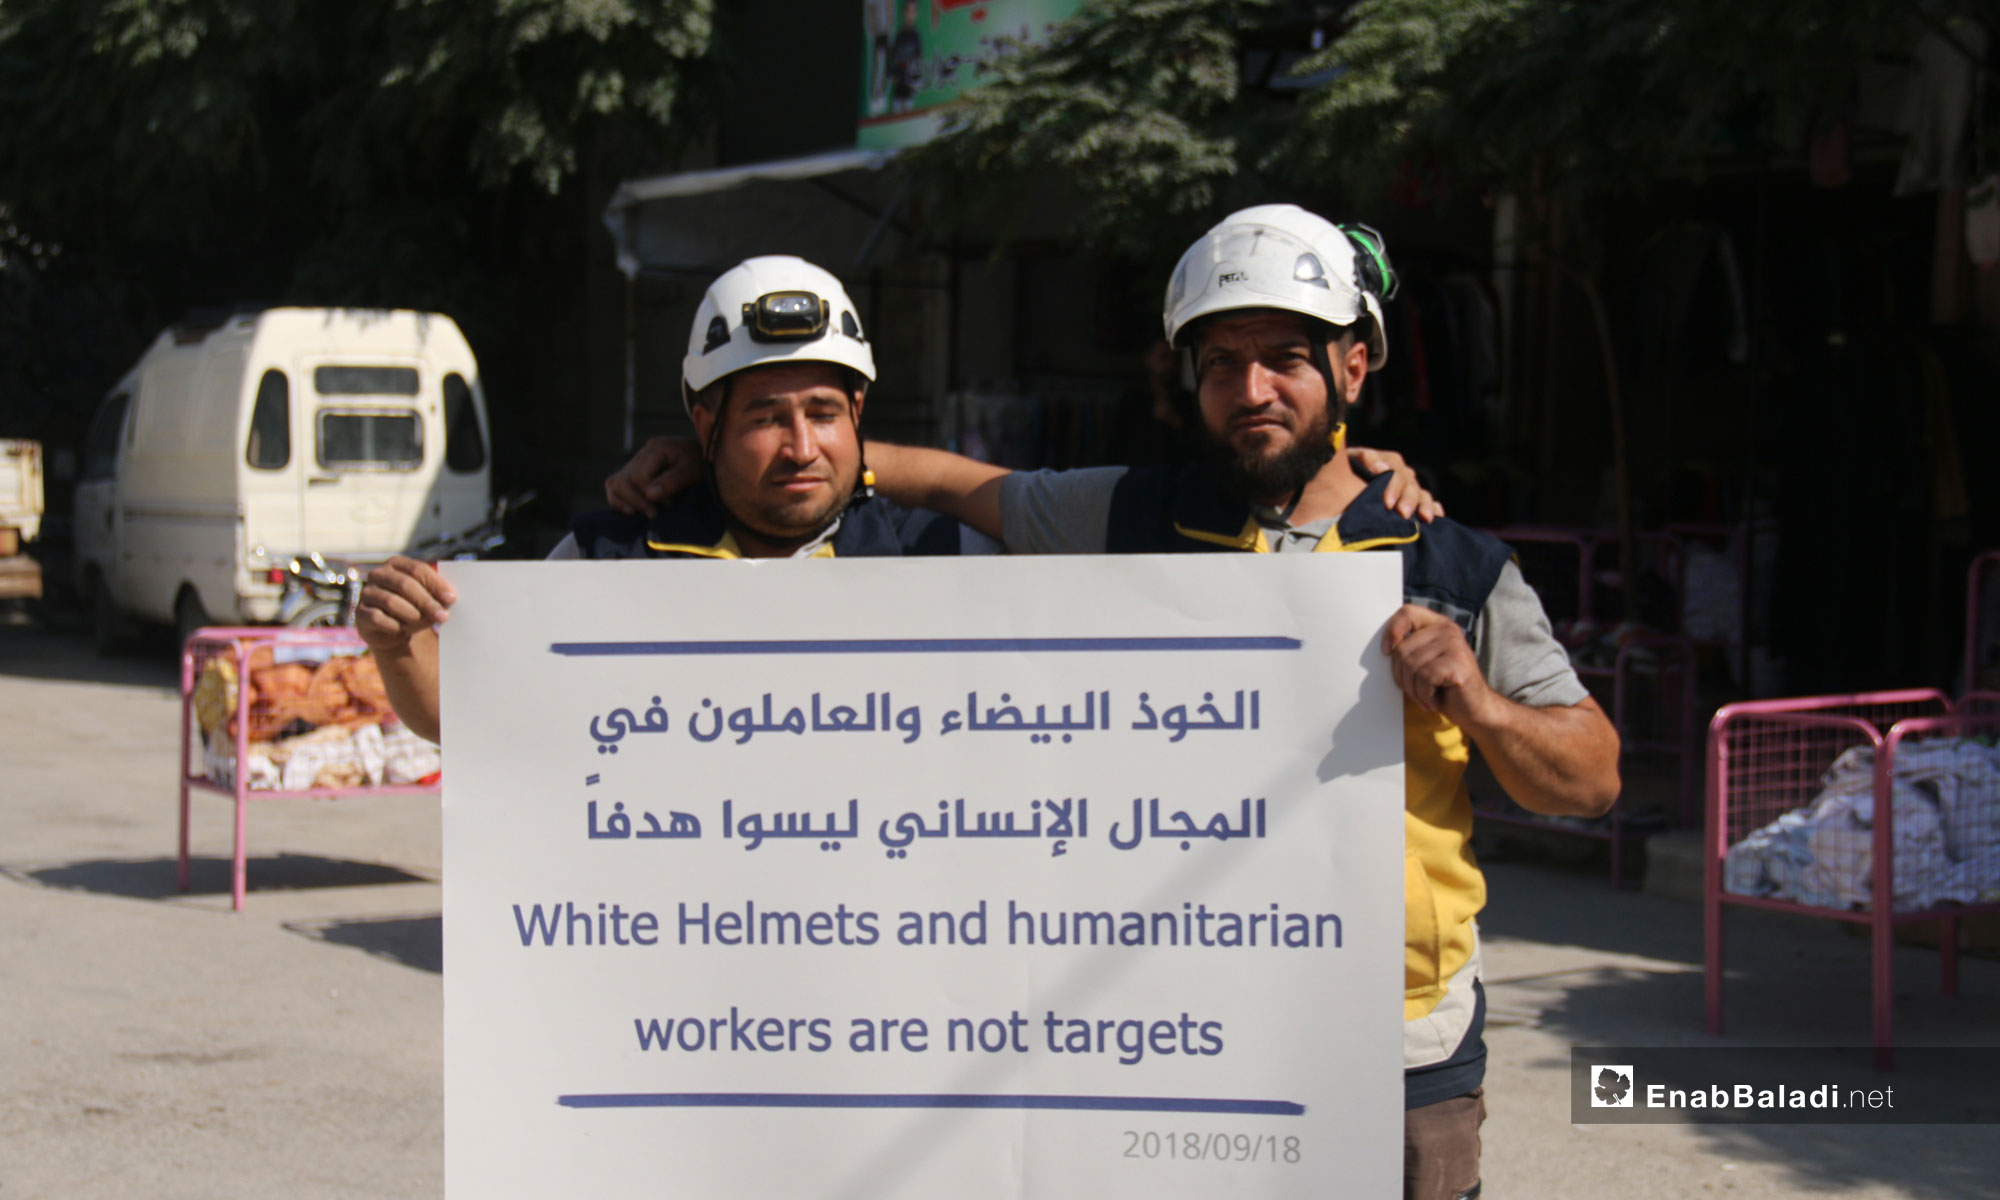  وقفة احتجاجية لفرق الدفاع المدني السوري  احتجاجًا على استهداف  الكوادر الطبية في مدينة كفرنبل بريف إدلب - 18 من أيلول 2018 (عنب بلدي)